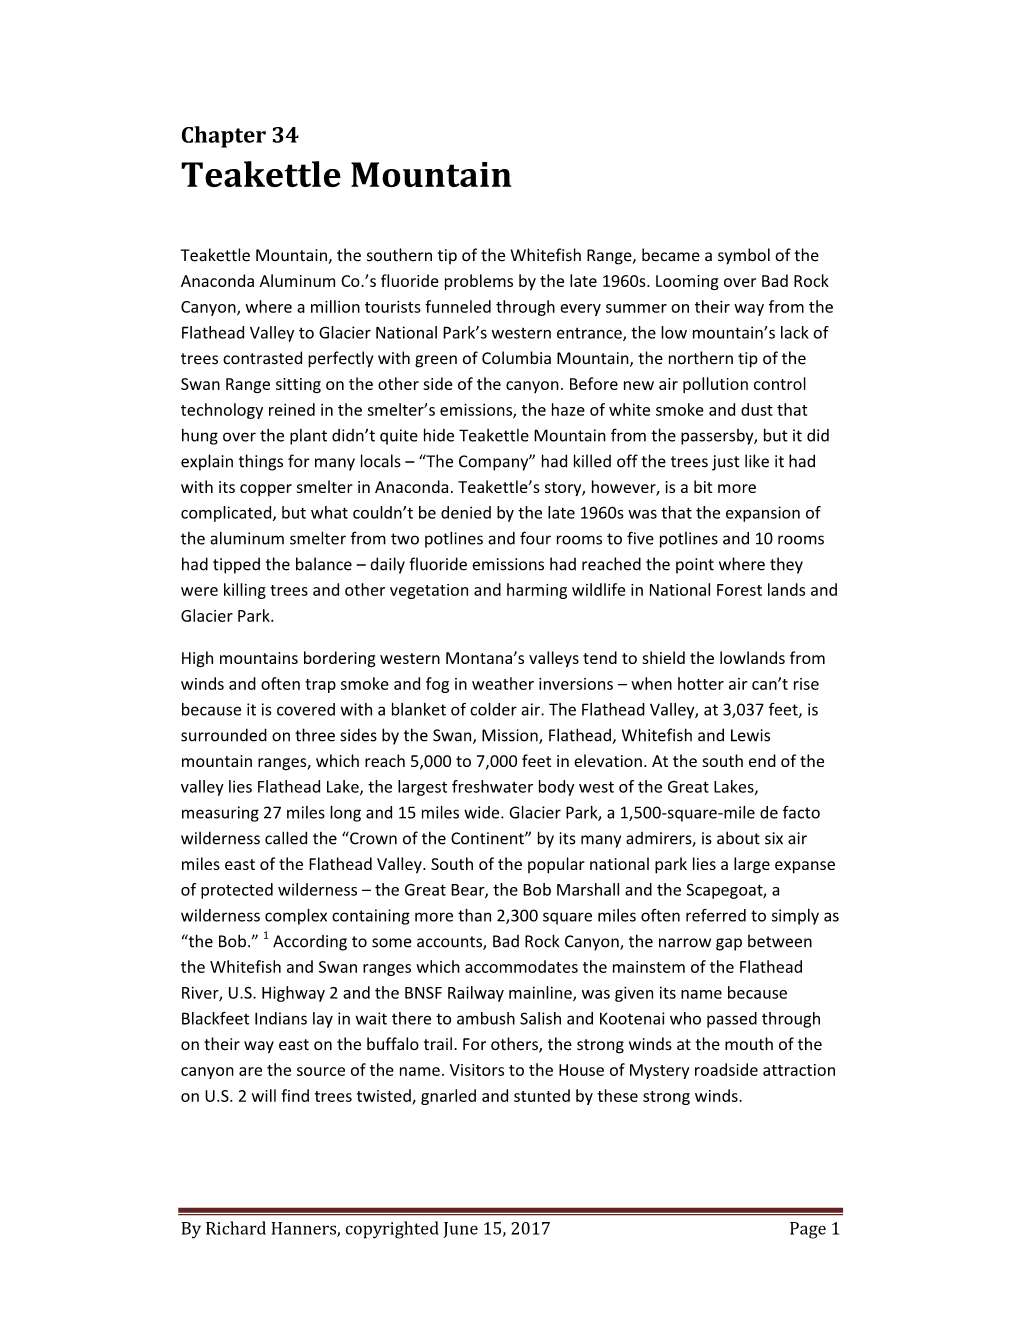 Teakettle Mountain